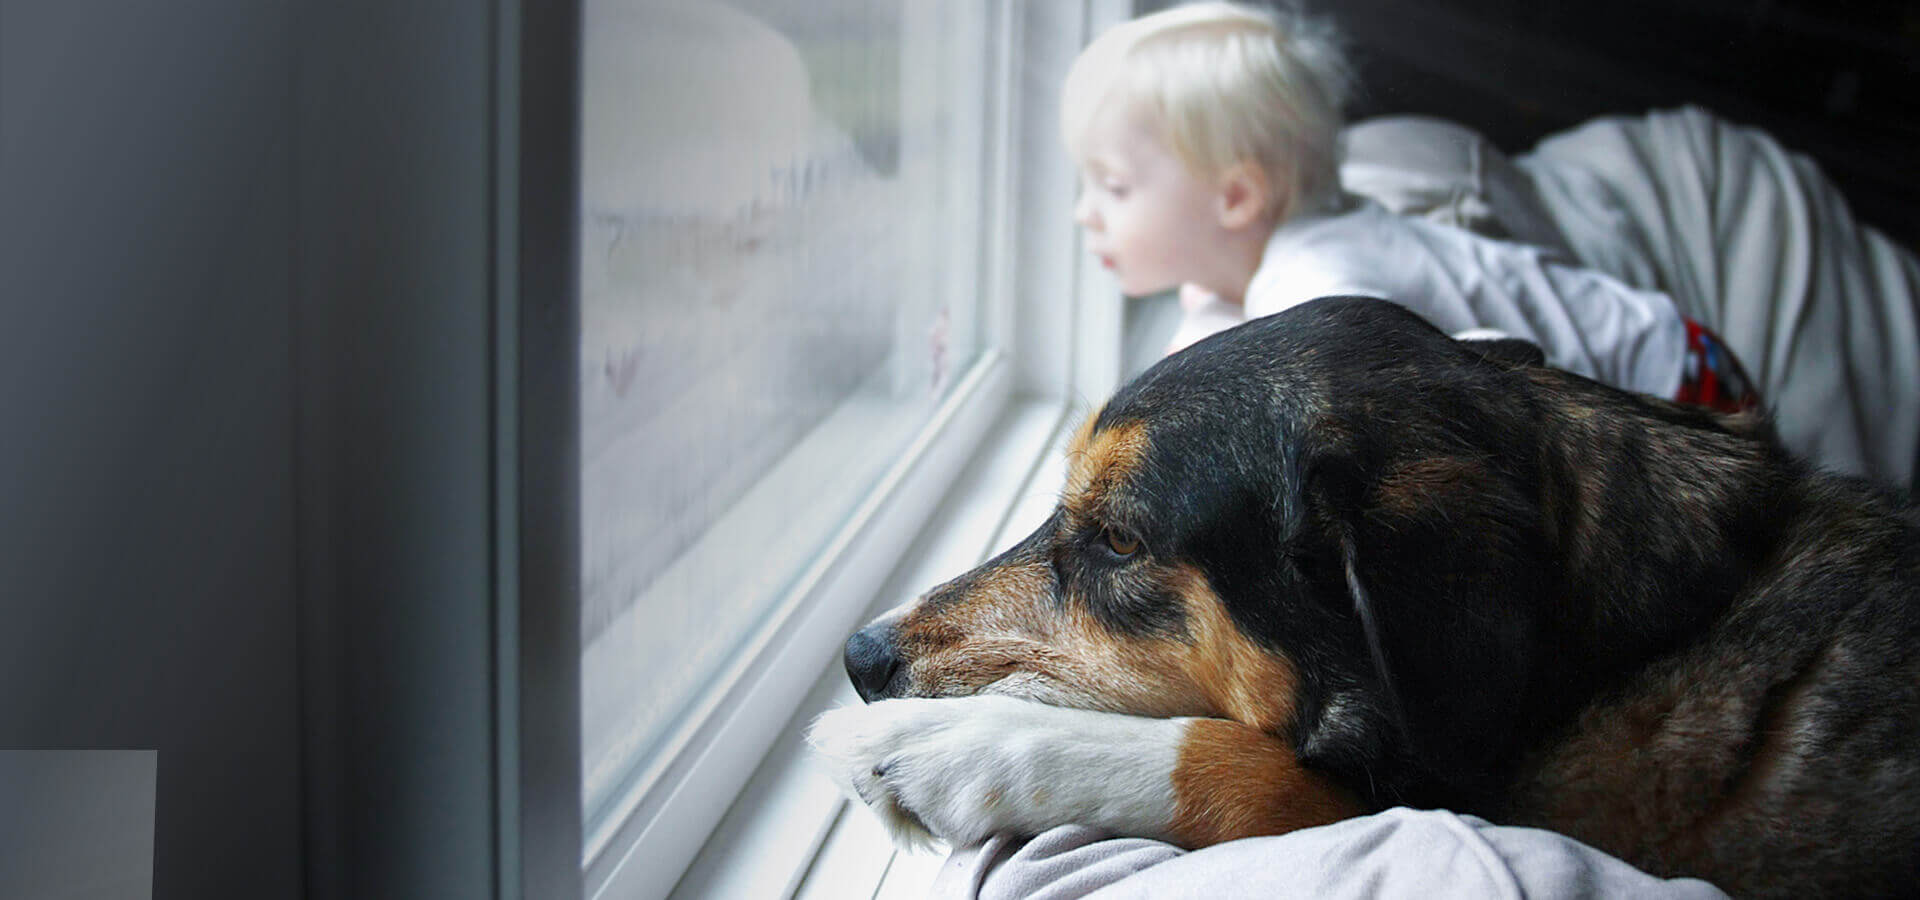 Ein Hund und ein kleines Kind sitzen vor dem Fenster und schauen nach draußen. Draußen regnet es.